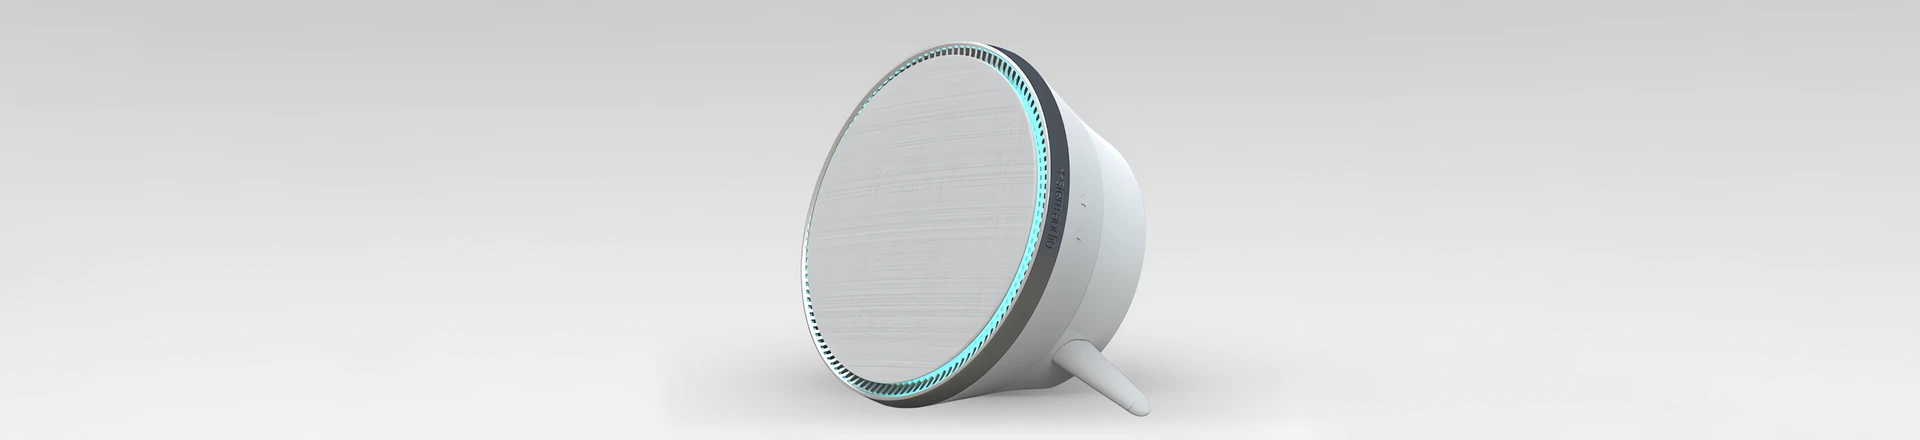 Stem Audio przedstawia głośnik Stem Speaker - nowy element systemu Stem Audio Ecosystem